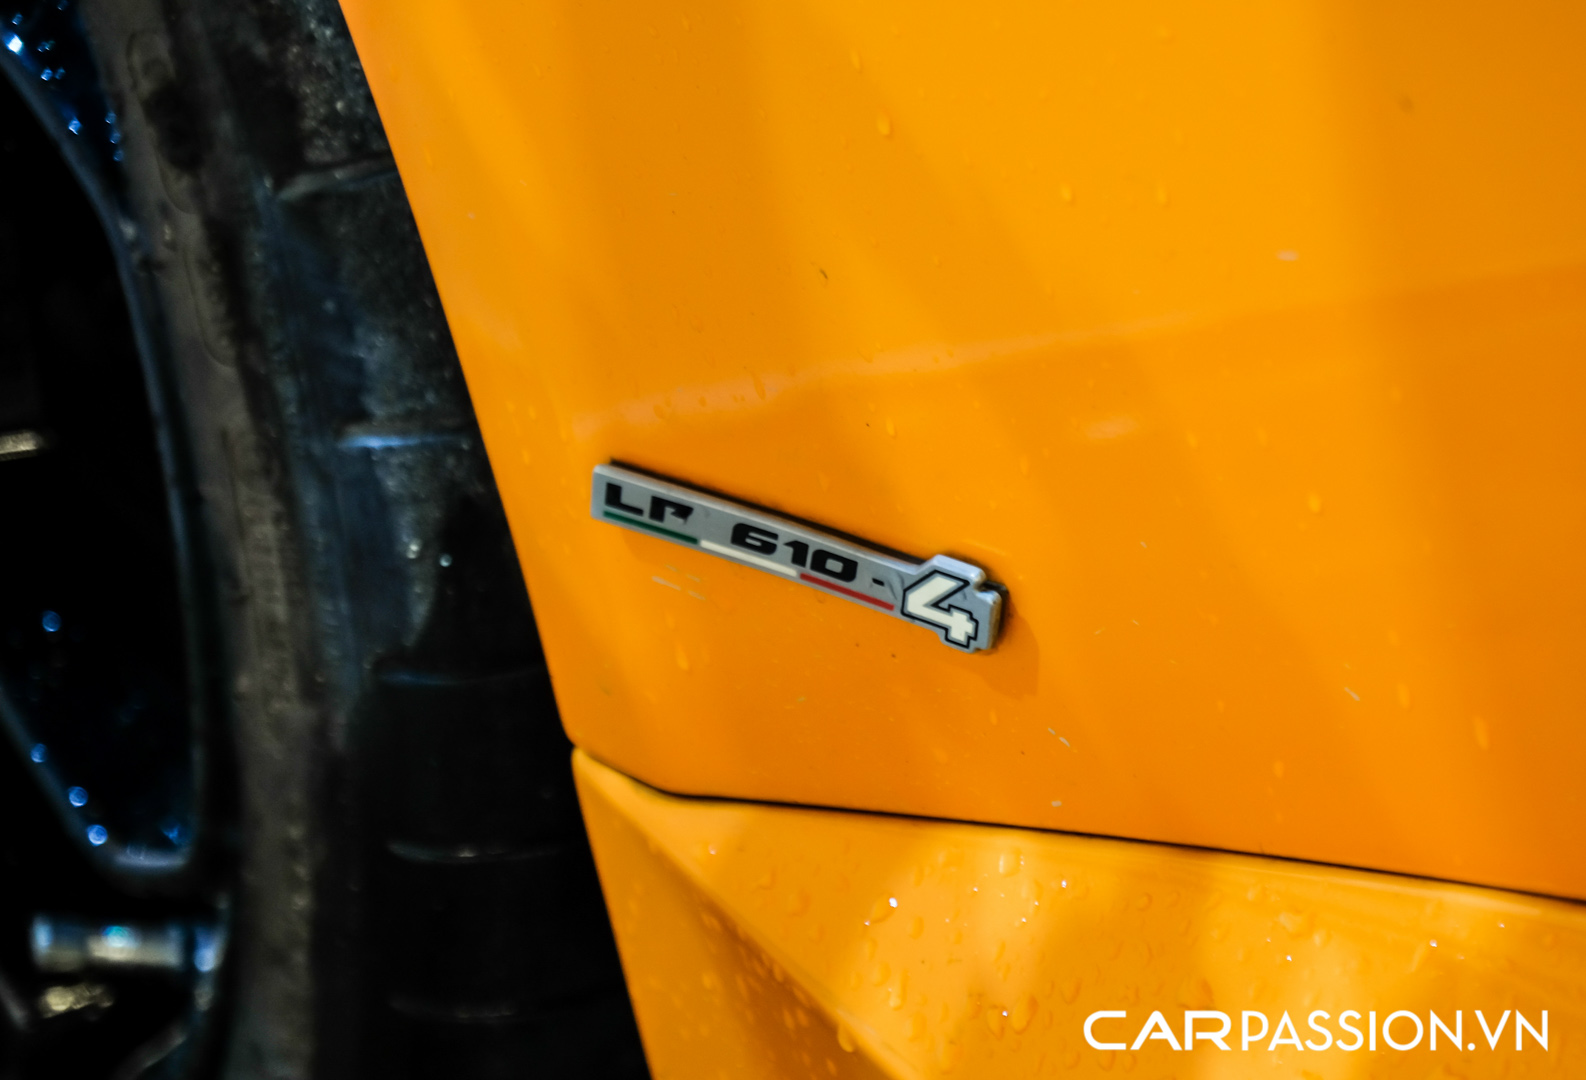 CP-Bộ đôi Lamborghini Huracan độ độc đáo41.jpg